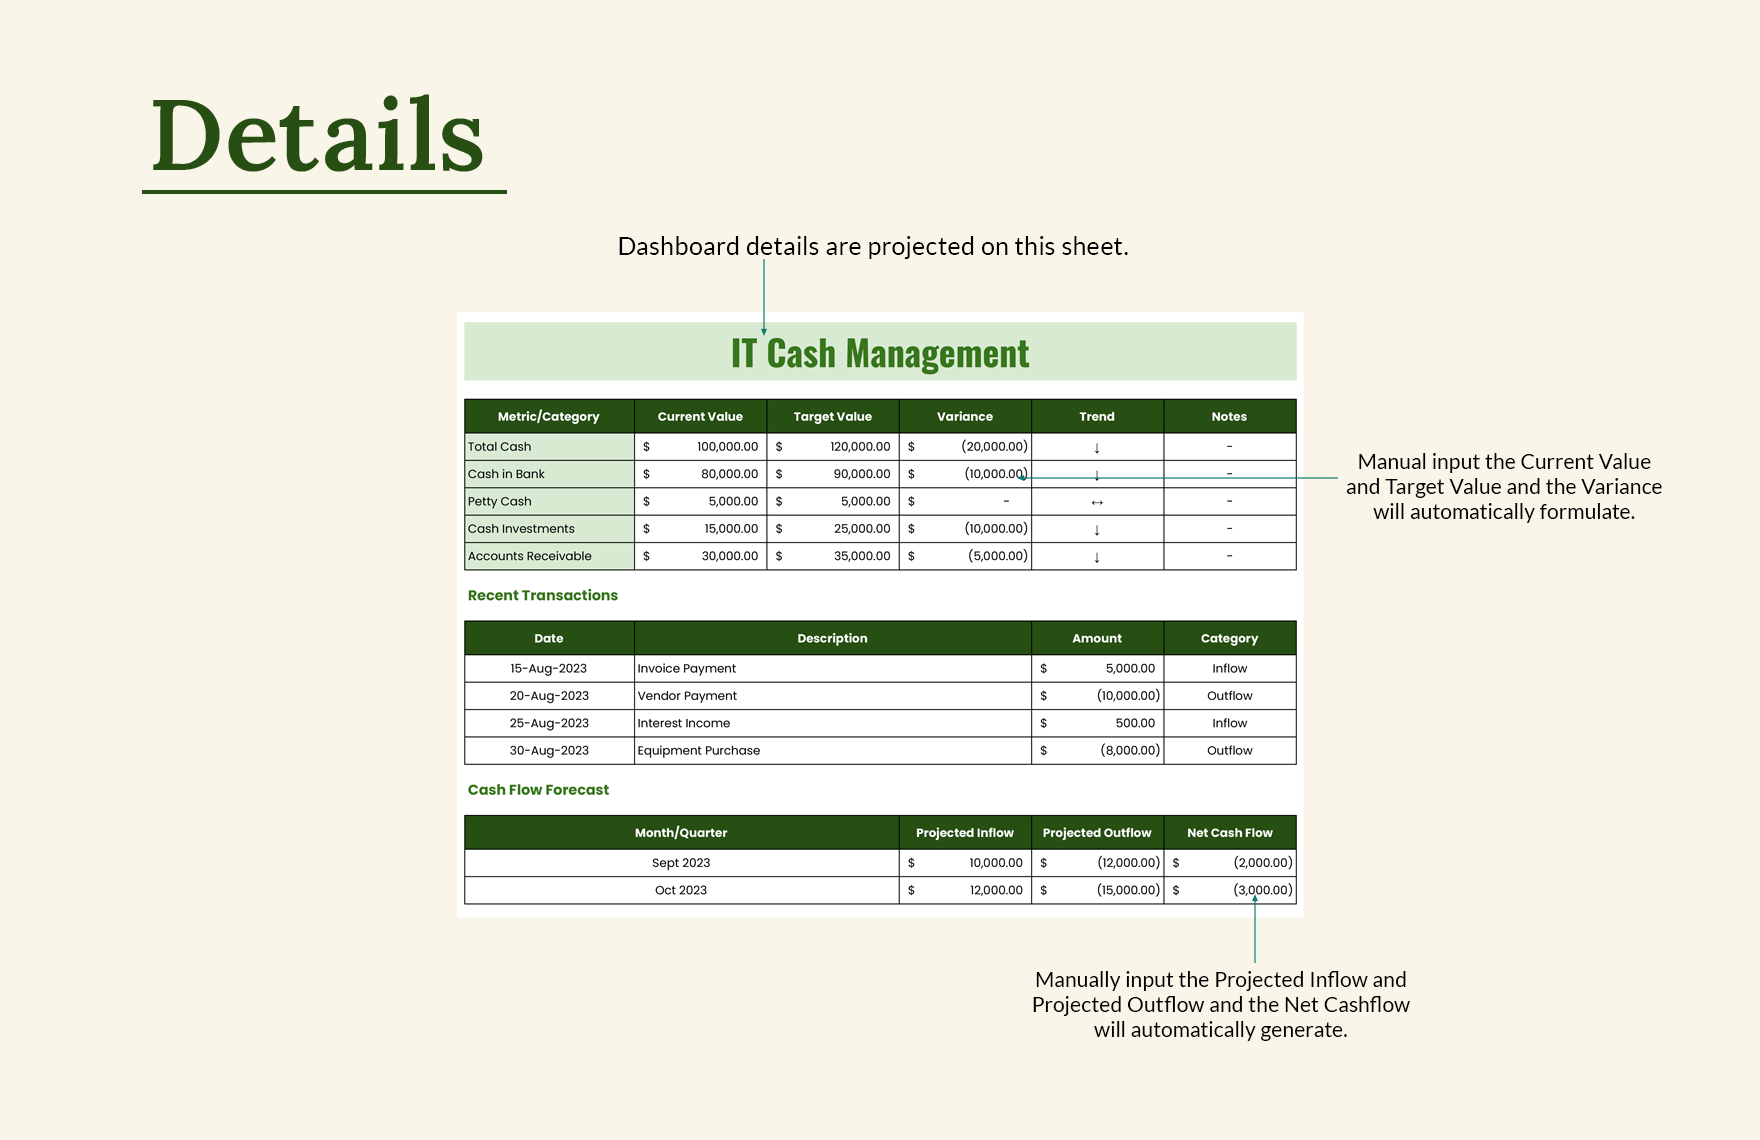 IT Cash Management Dashboard Sheet Template